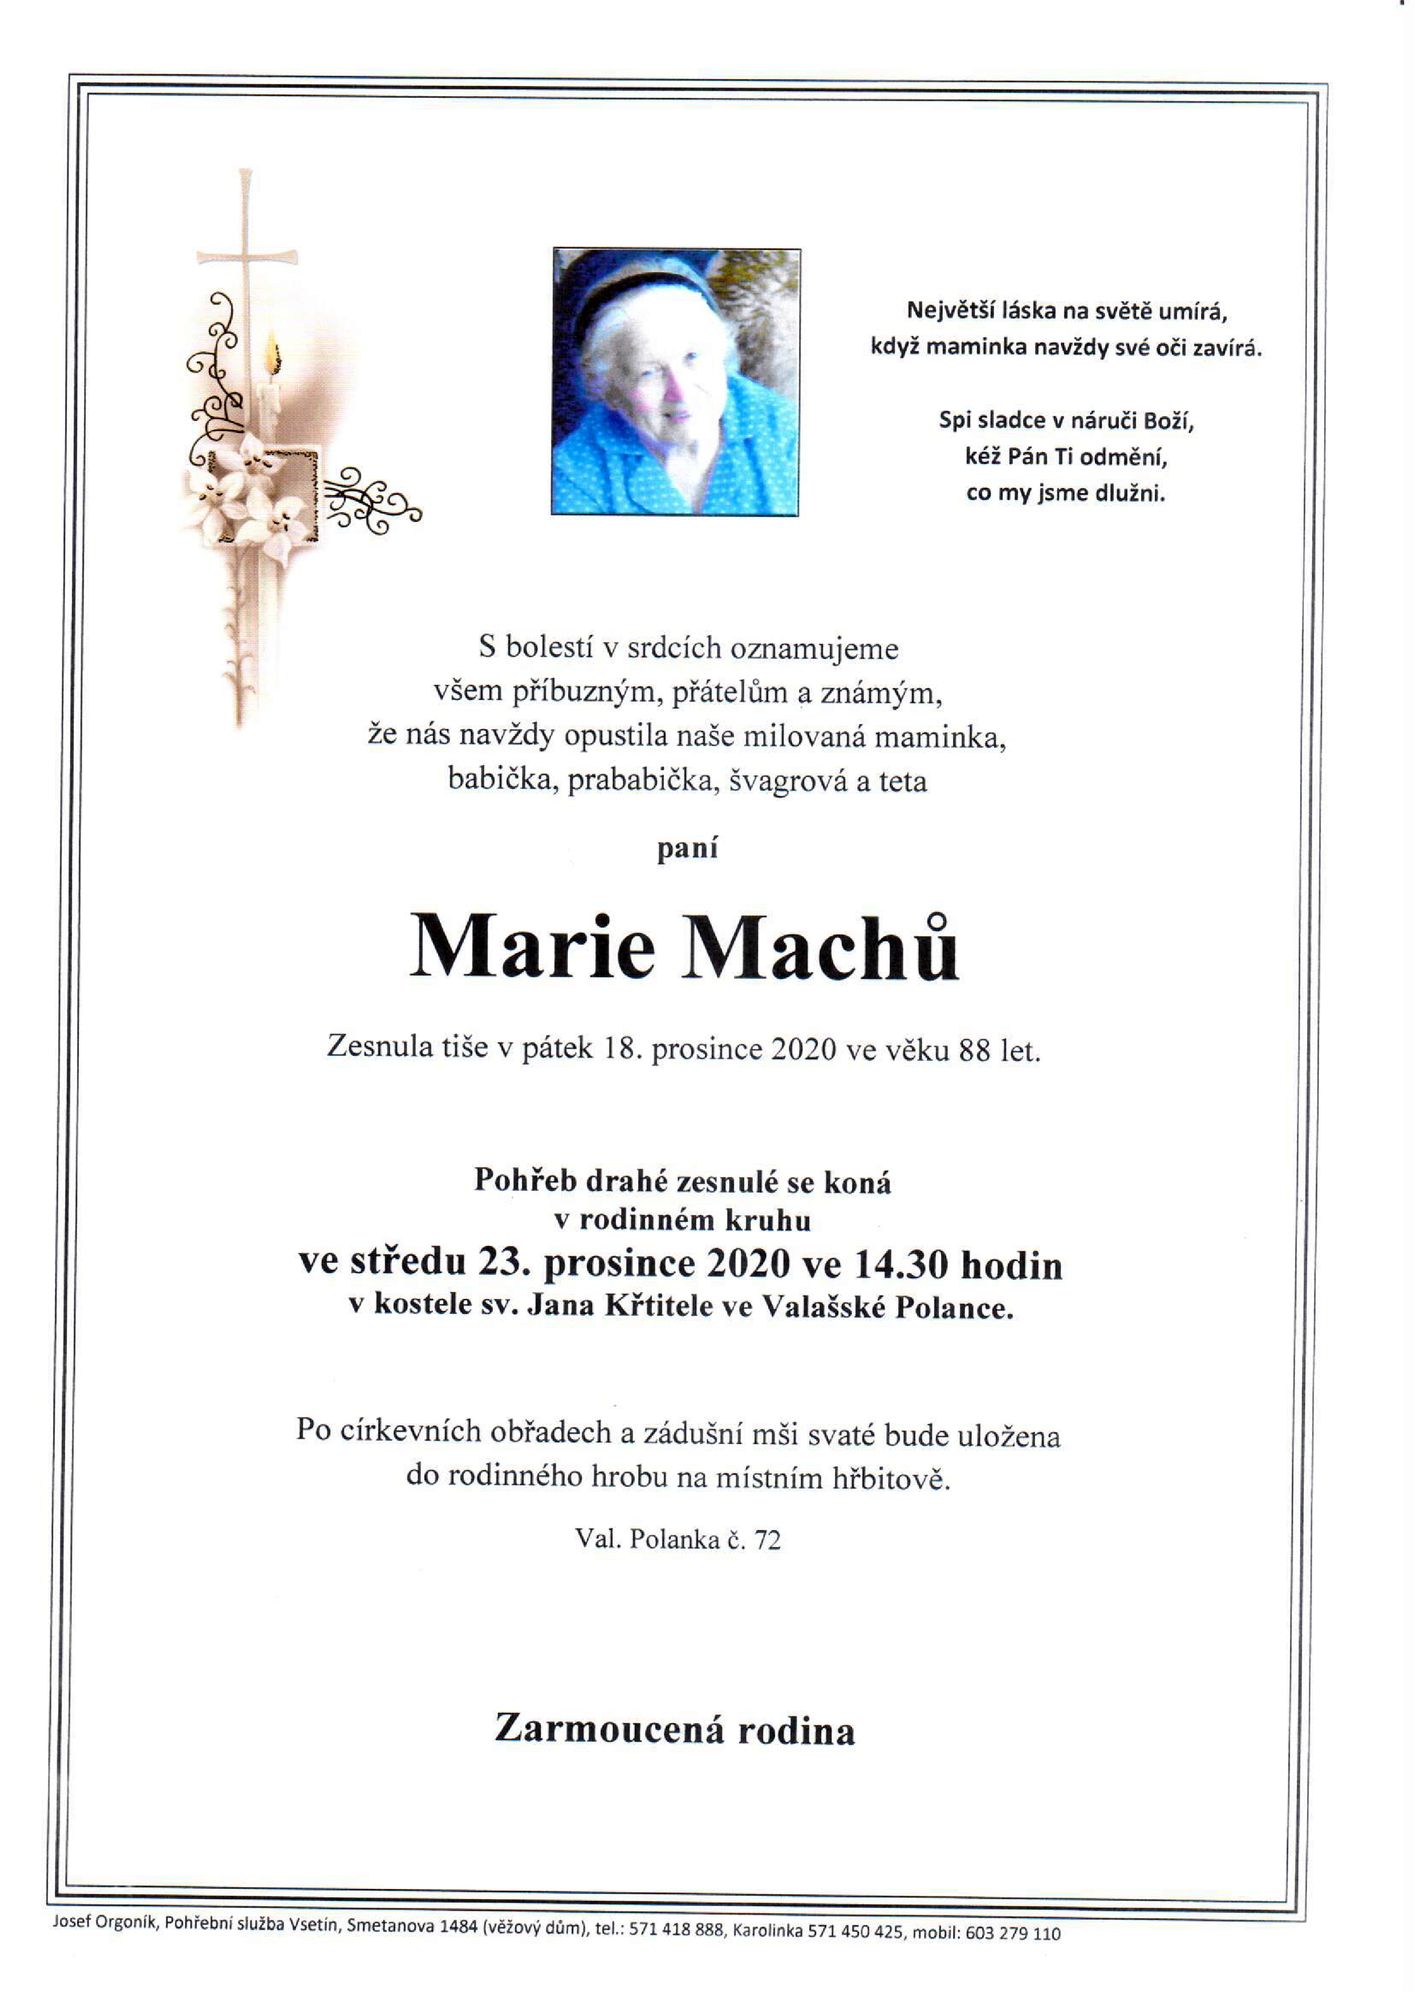 Marie Machů